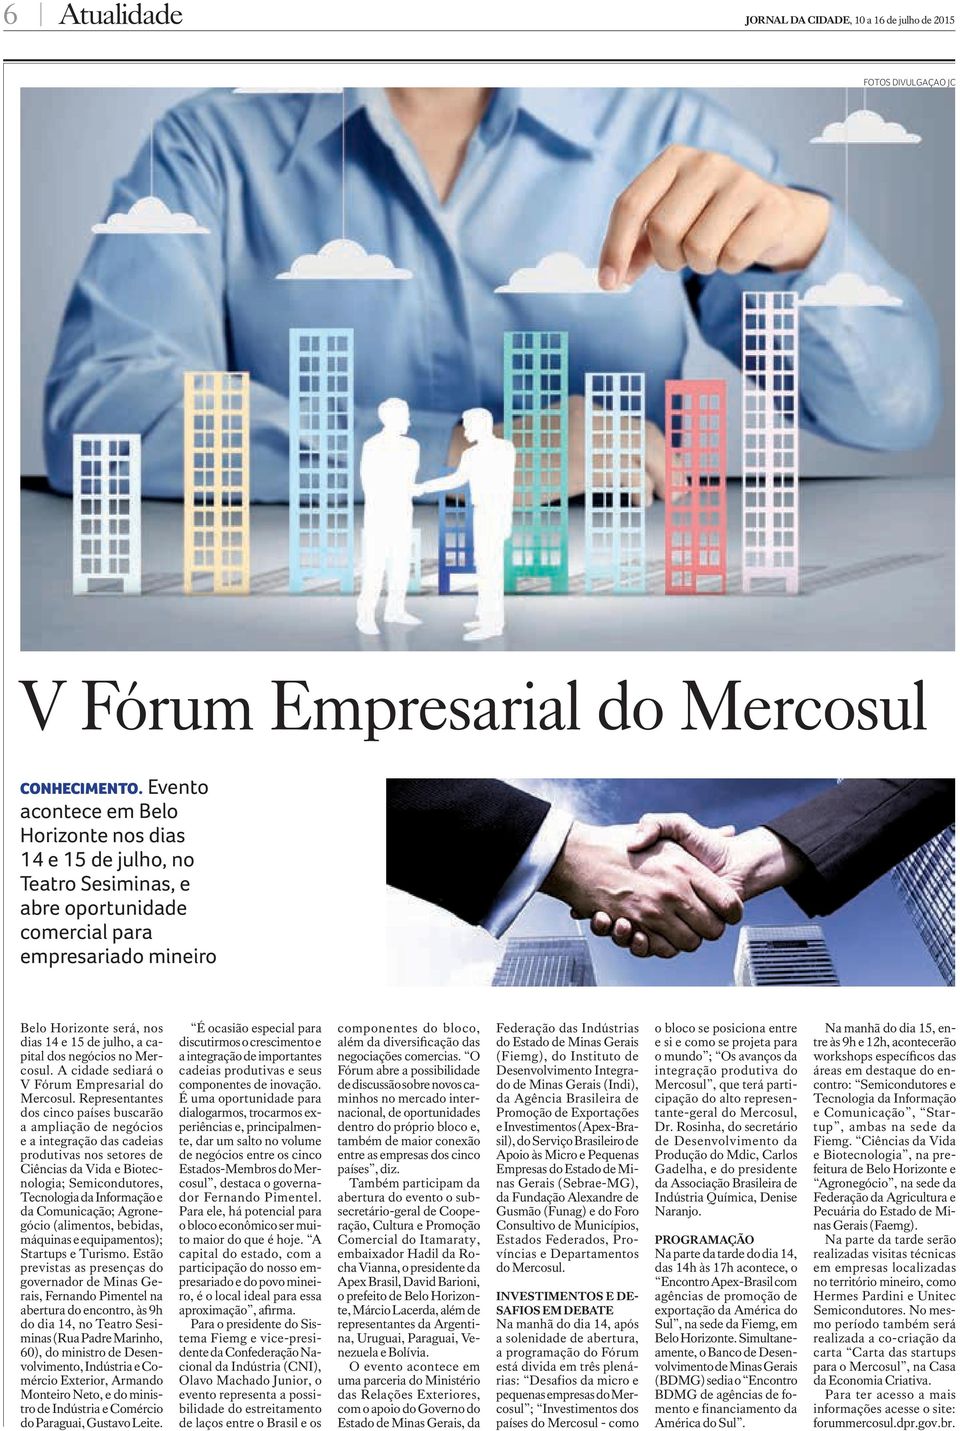 negócios no Mercosul. A cidade sediará o V Fórum Empresarial do Mercosul.